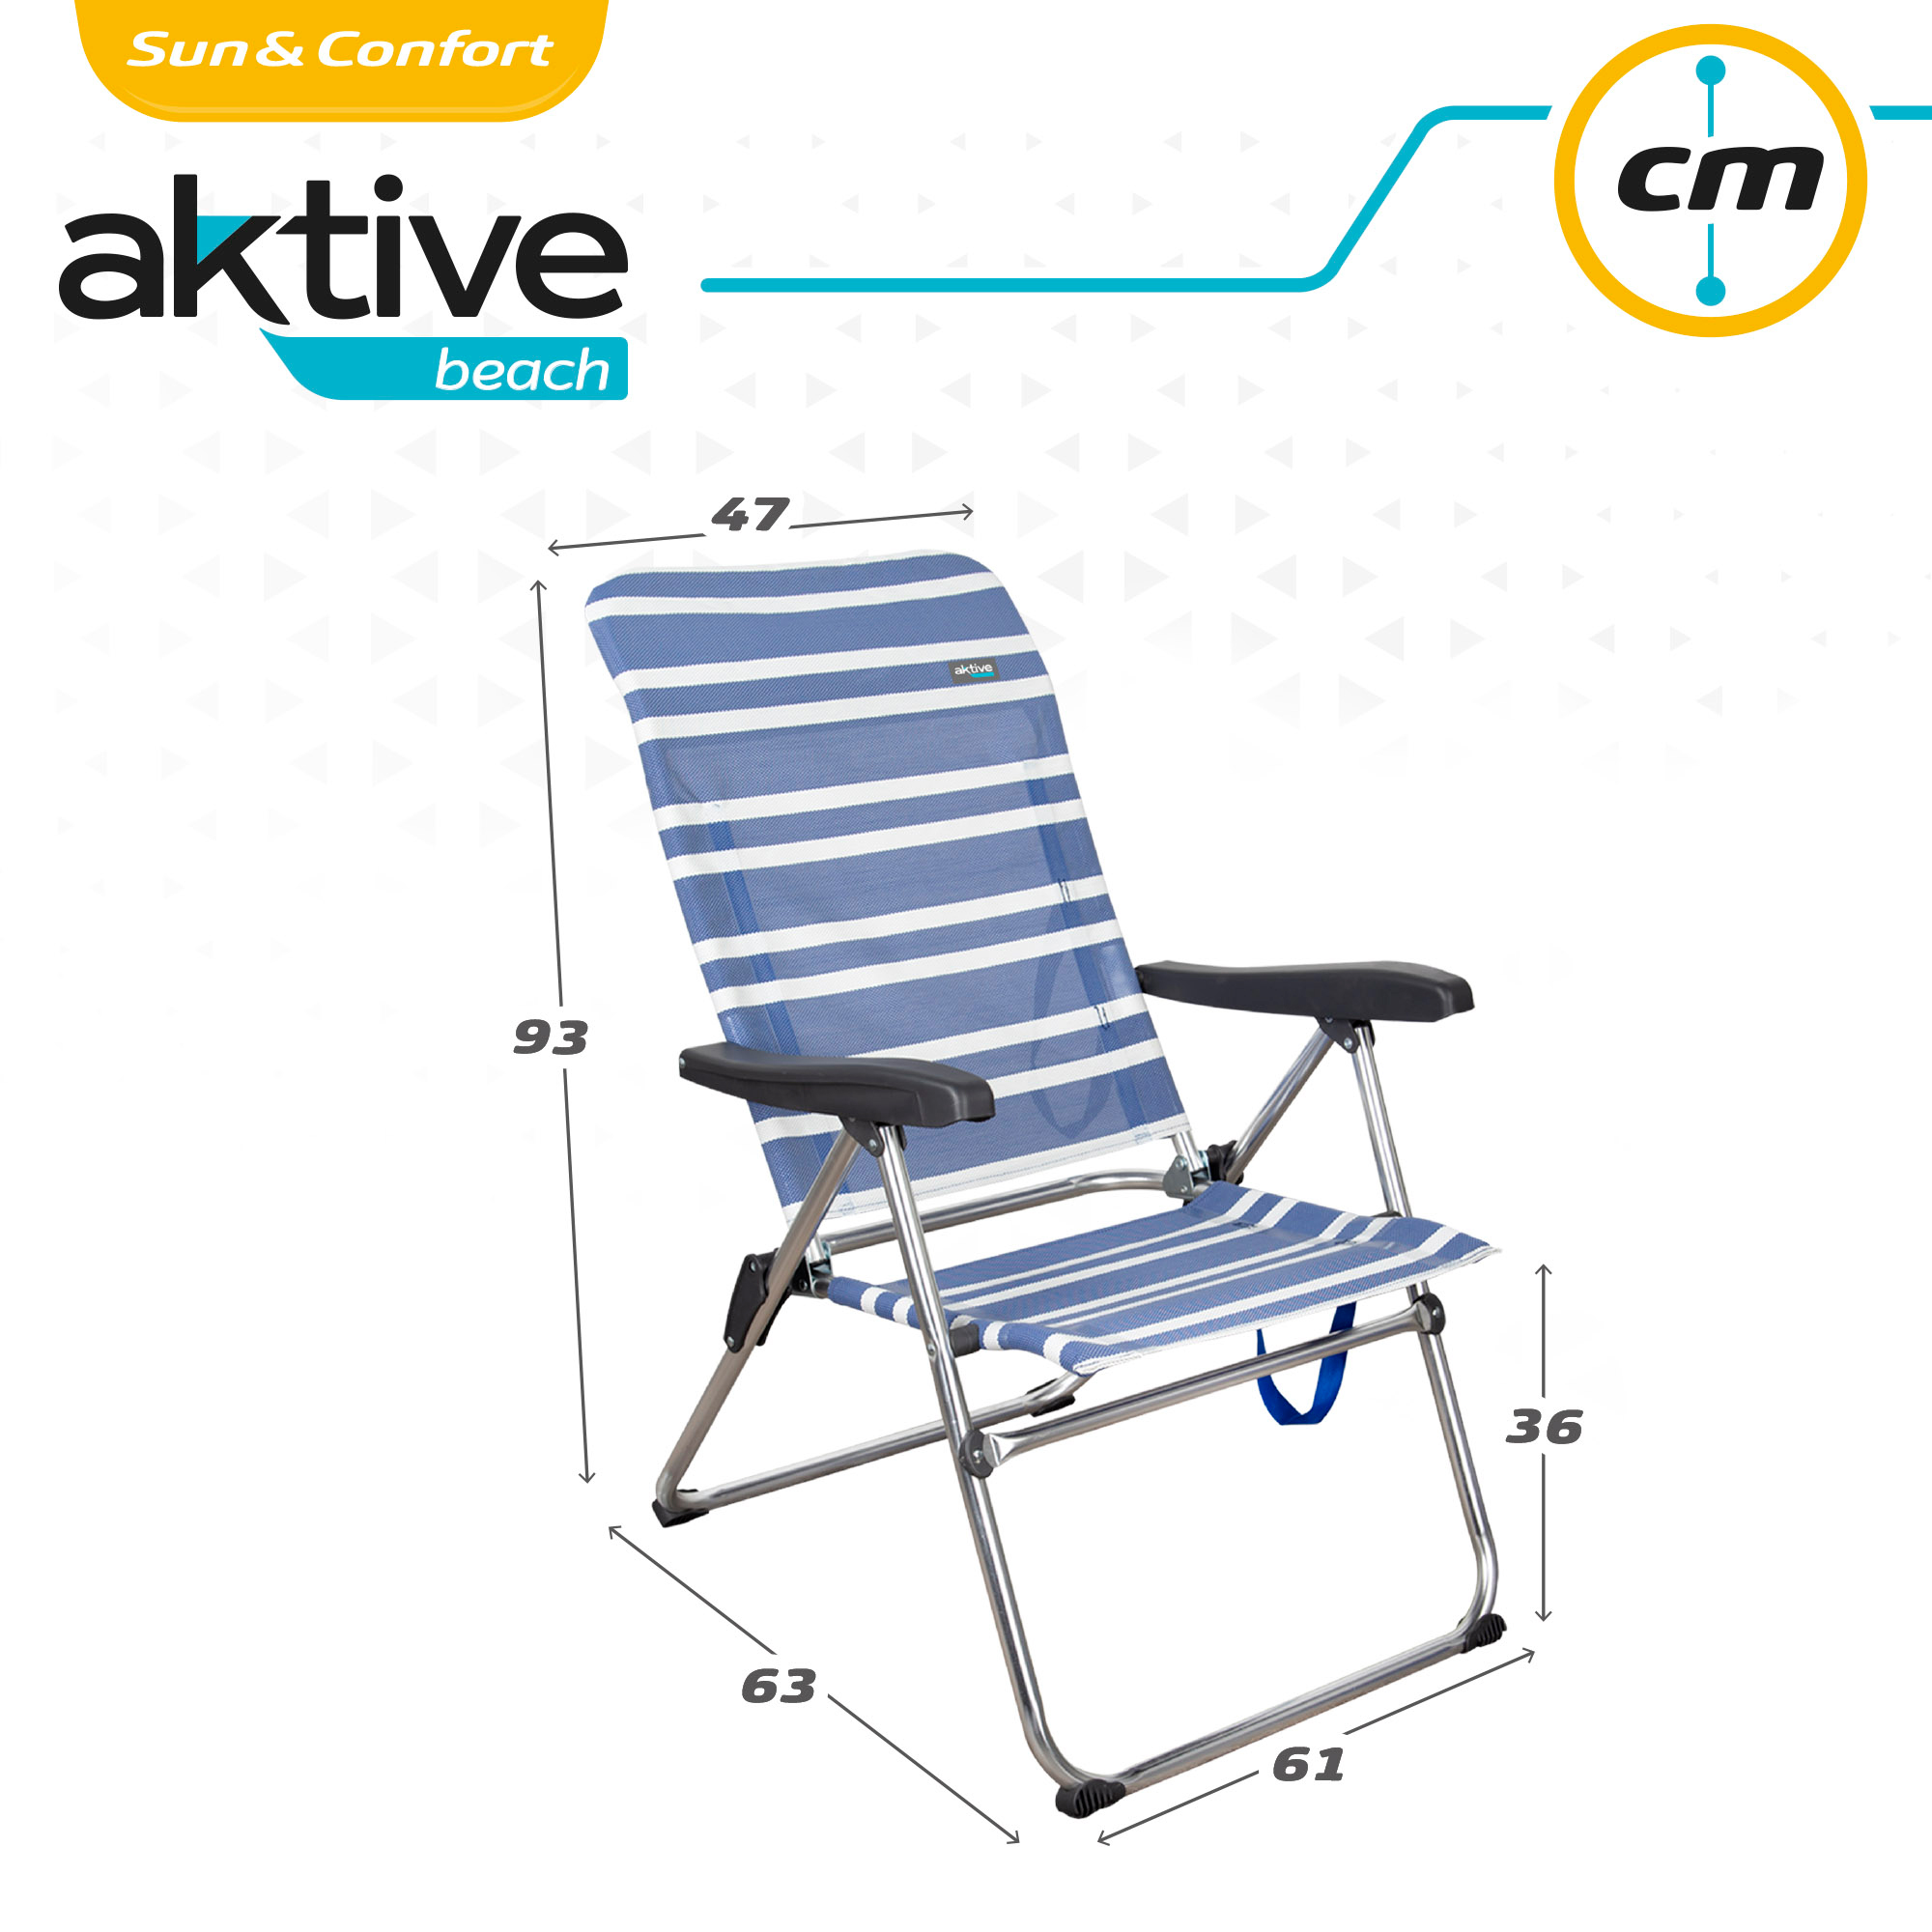 Saving Pack 2 Cadeiras De Praia Anti-queda Multiposições Mykonos 47x63x93 Cm Aktive